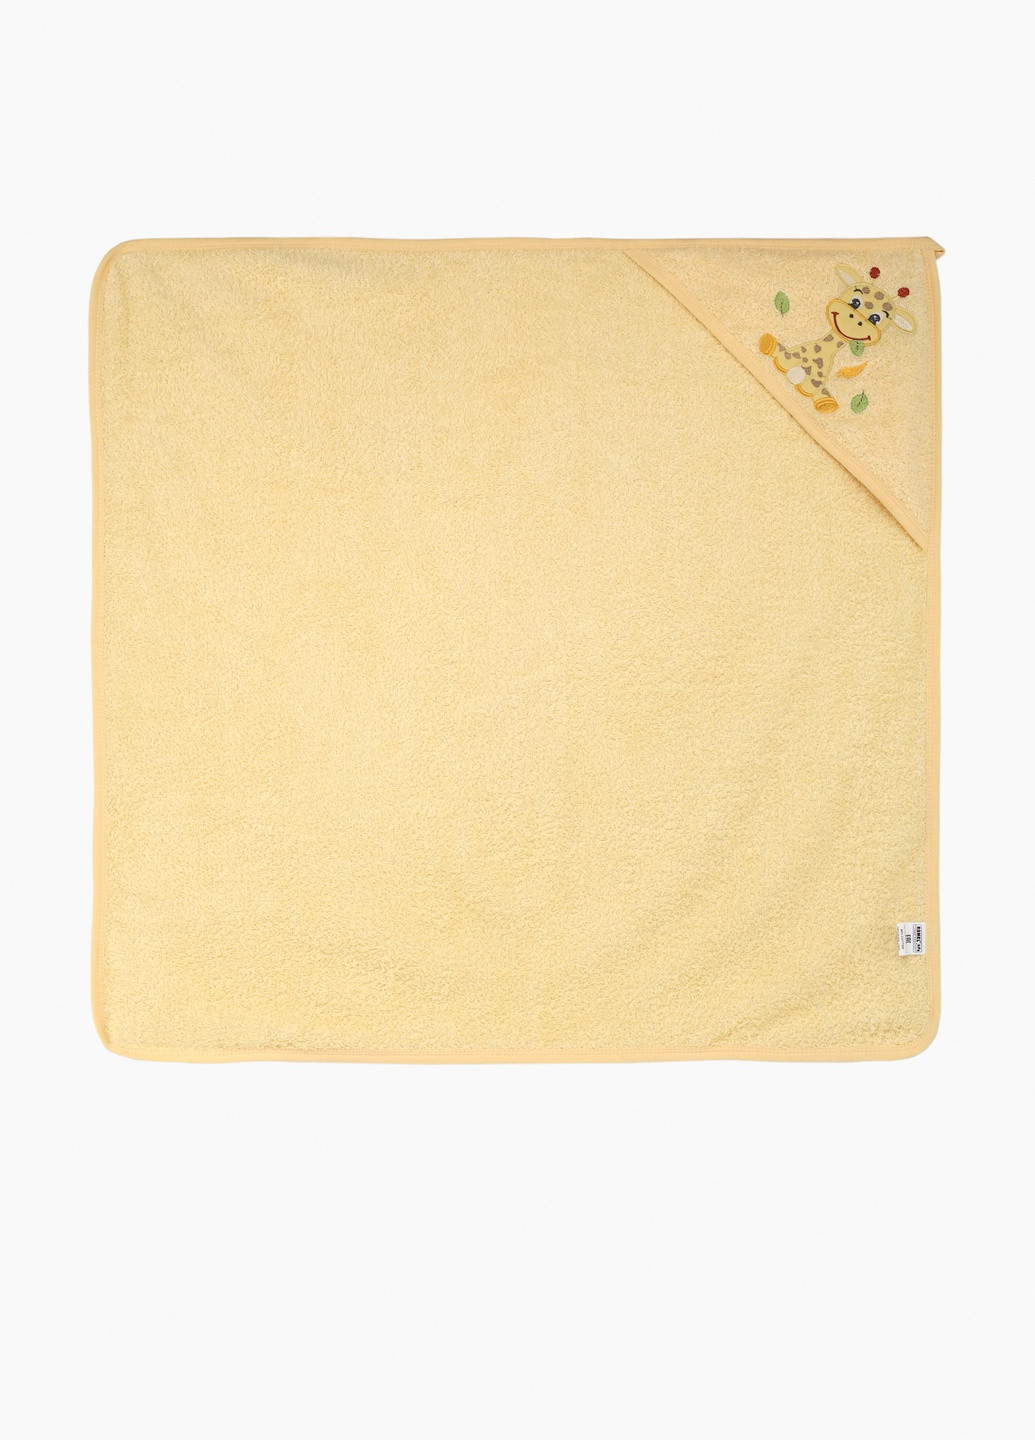 Ramel полотенце с уголком желтый производство - Турция